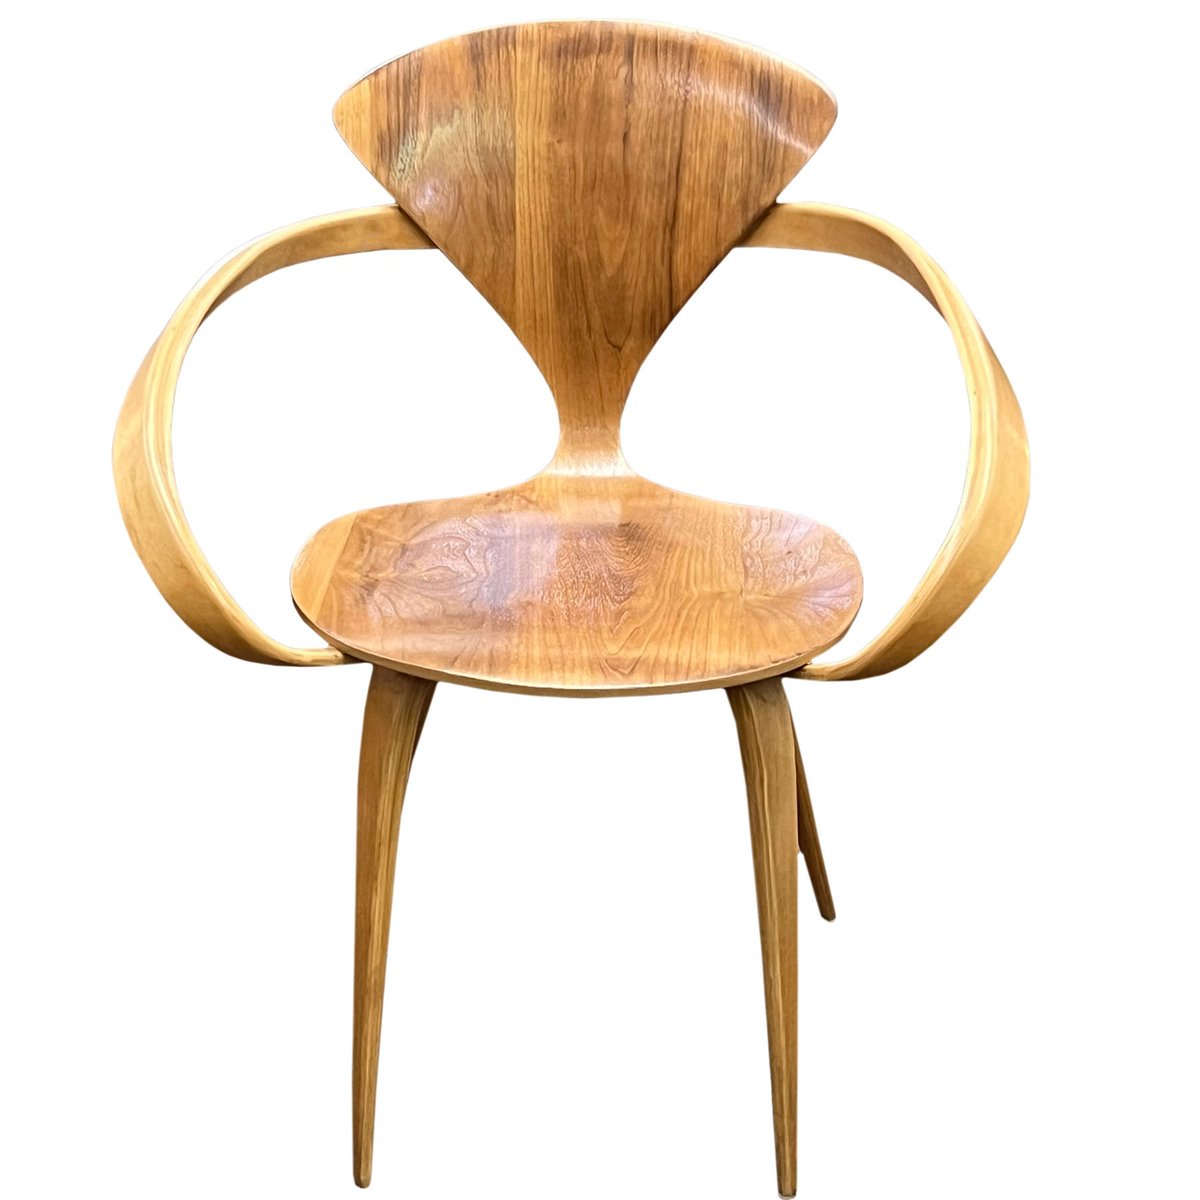 Mid Century Wooden Pretzel Chair

l8r.it/u2b7

#clutterantiques #midcenturychair #pretzelchair #woodenchair #midcenturyfurniture #sniderplazaantiques #interiordesign #luxurydecor #chairish #foundandchairished